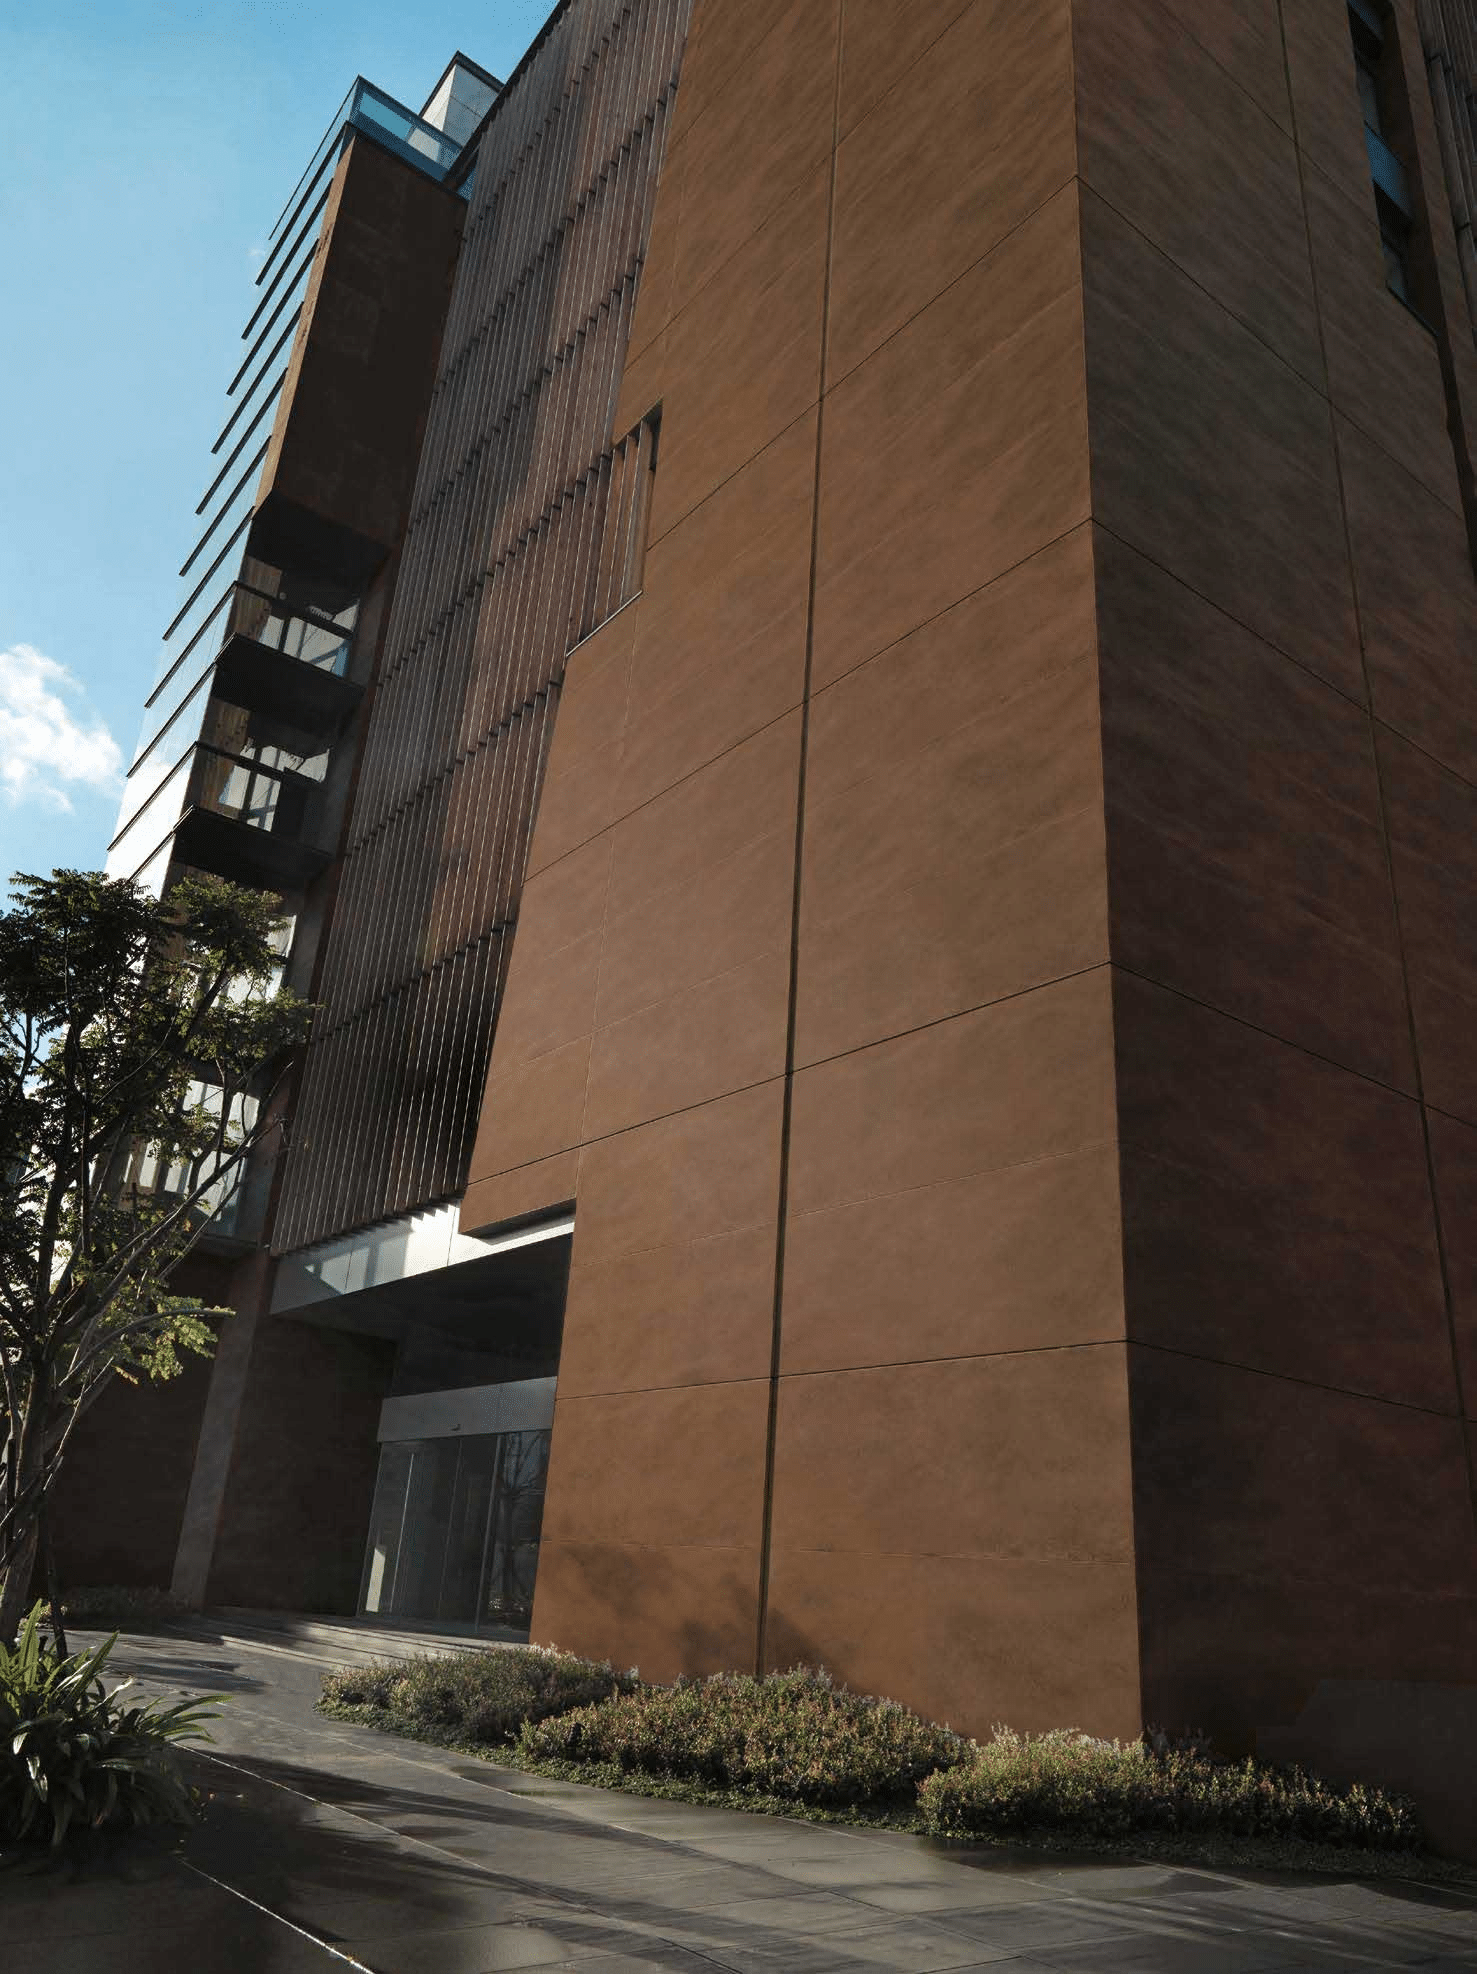 Brown ceramic tile building facade